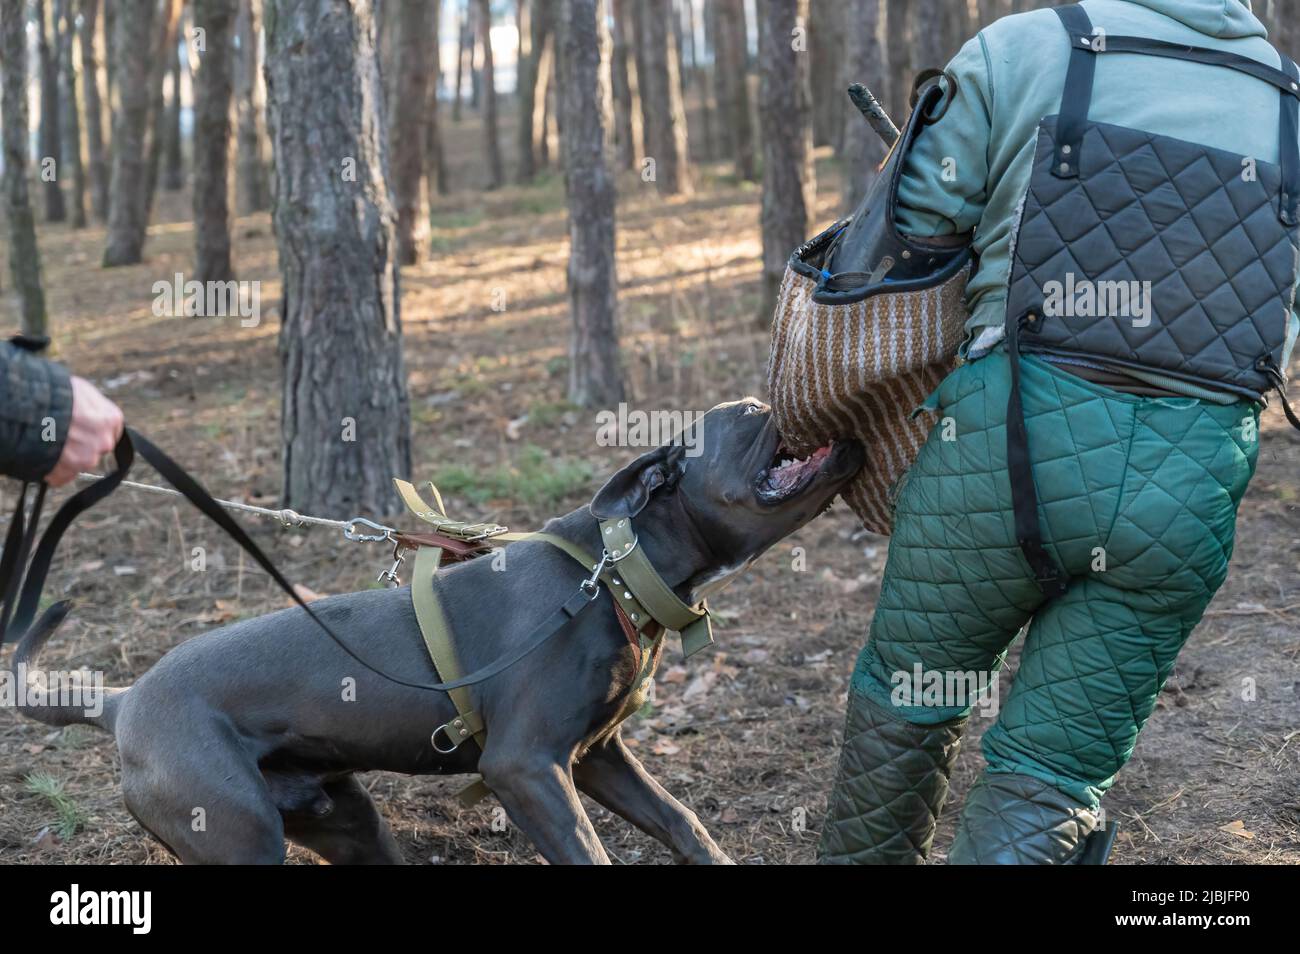 K9 ENTRENAMIENTO. Un perro Cane Corso masculino está atacando al entrenador. La mascota muerde manga Entrenador masculino con ropa especial. ¿WIT de entrenamiento Fotografía de stock - Alamy